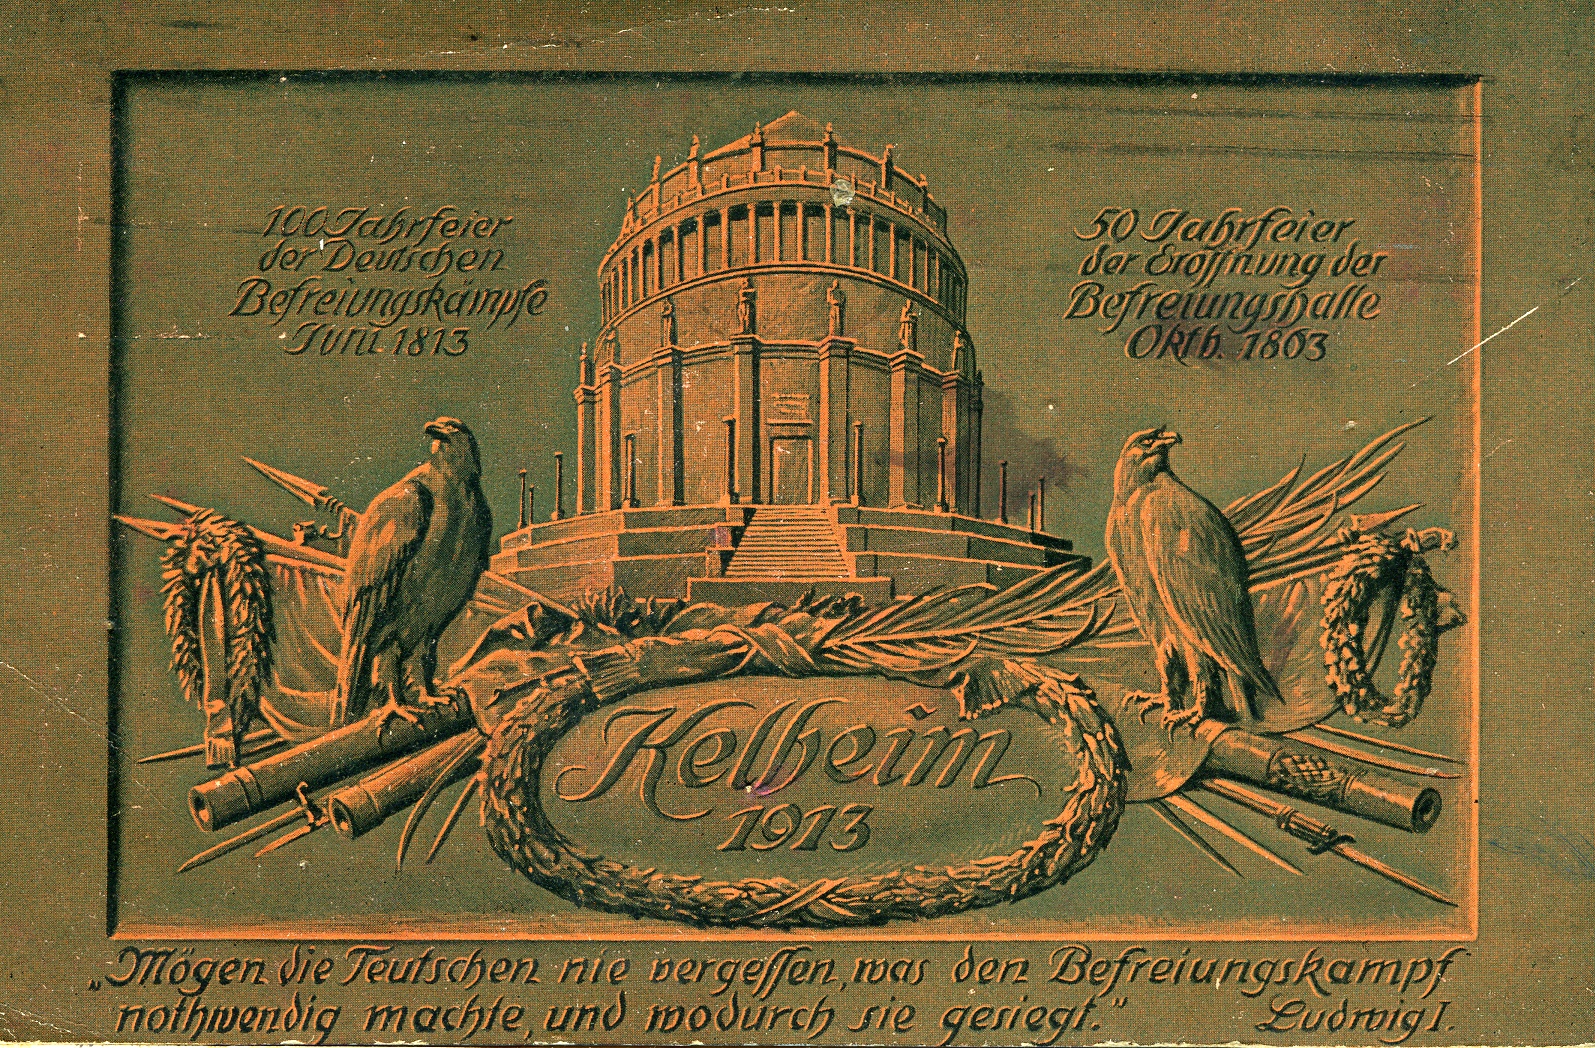 Postkarte zu "deutschen Befreiungskämpfen Juni 1813" (Historisches Museum der Pfalz, Speyer CC BY)